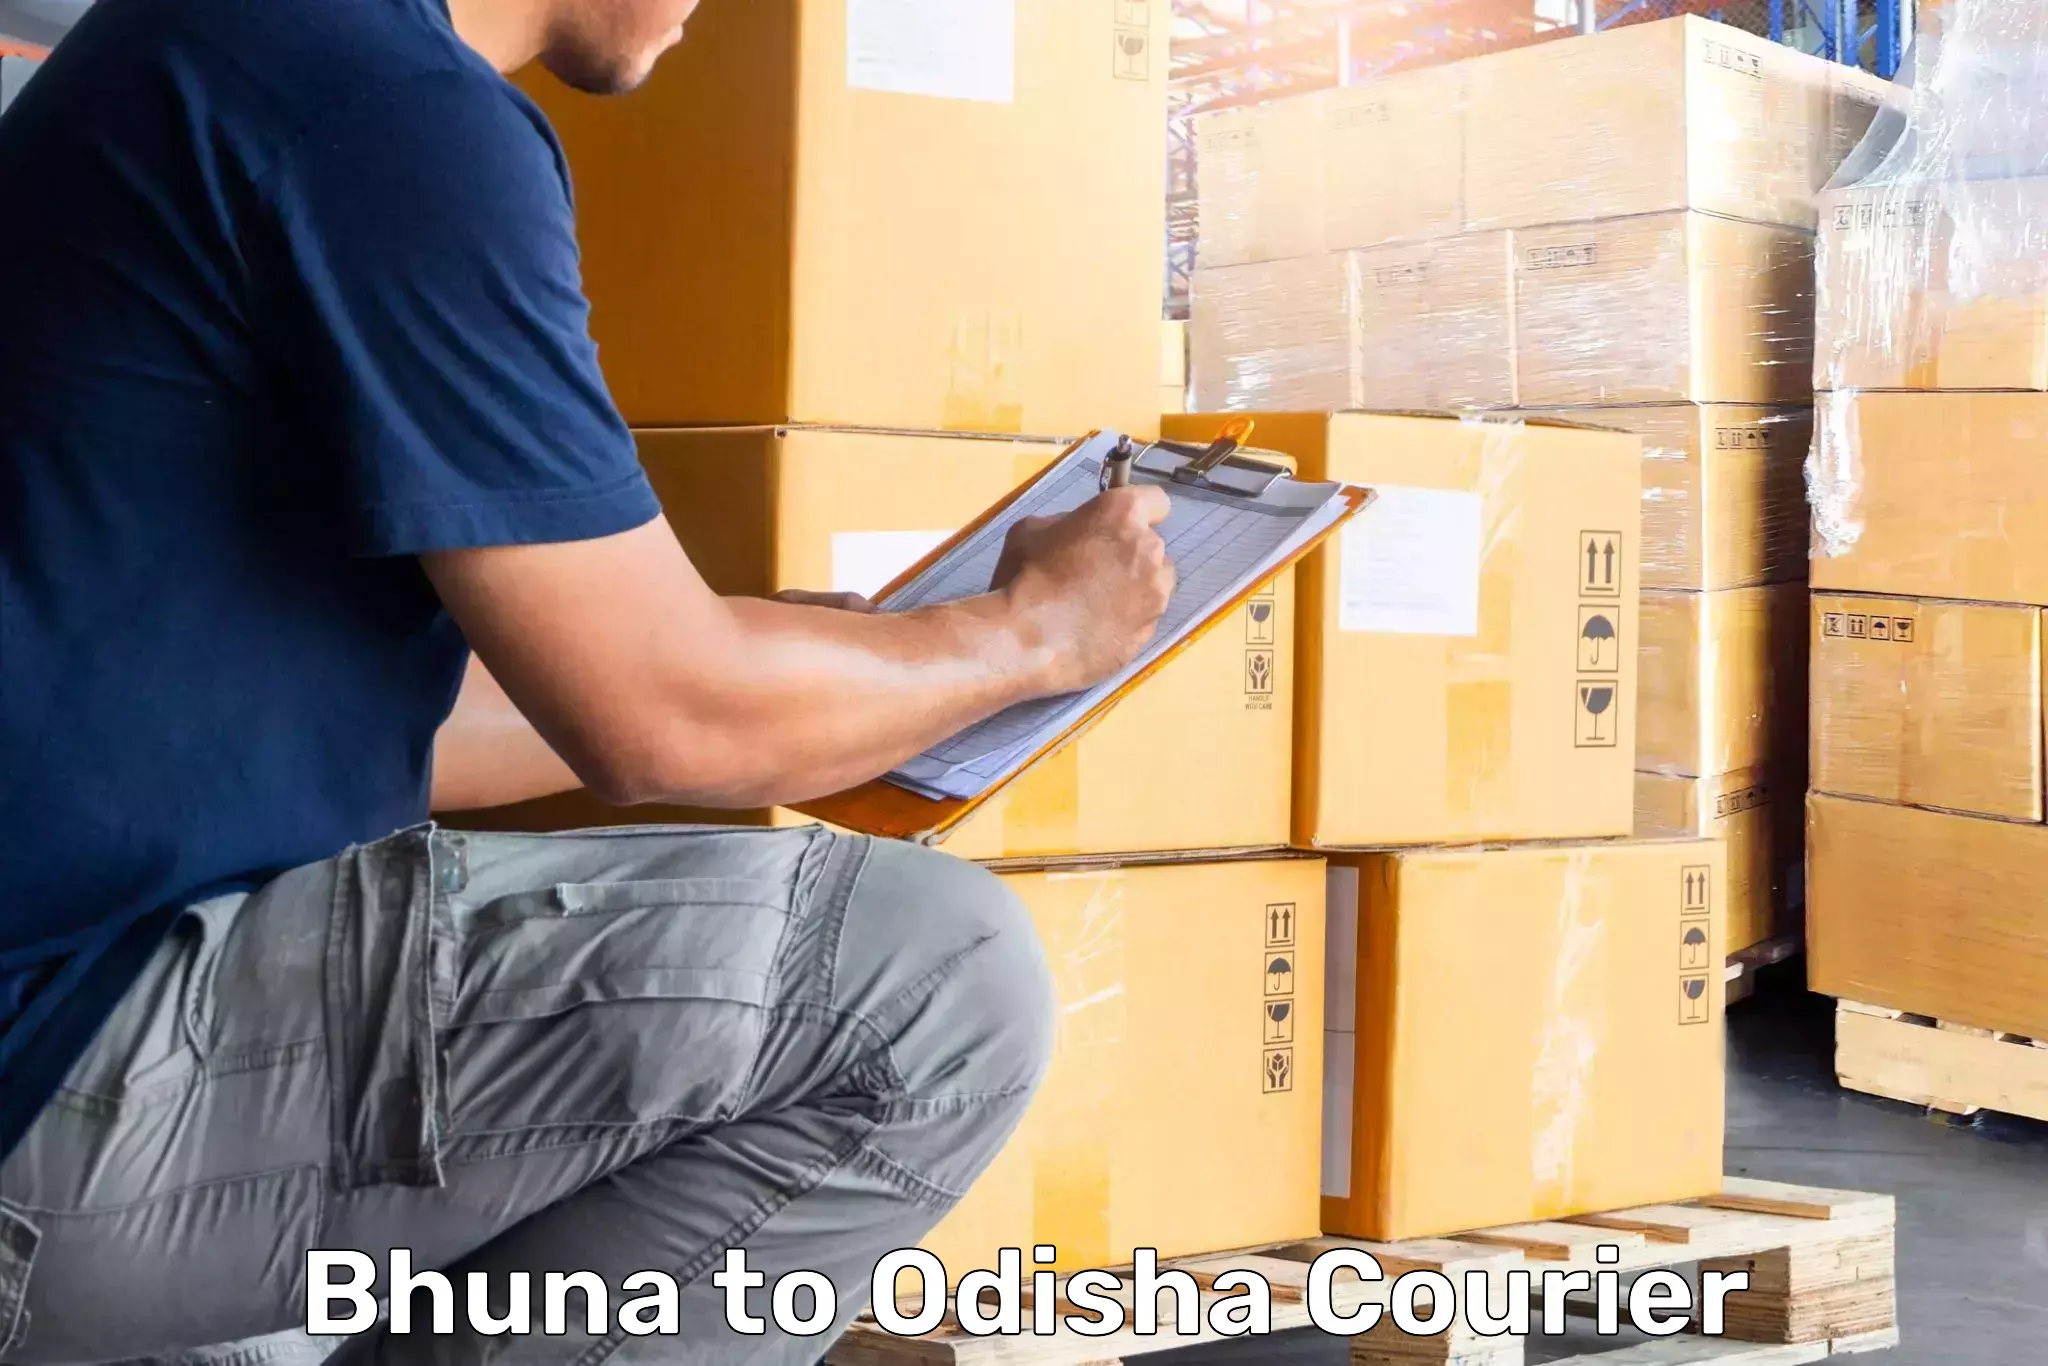 Luggage delivery app Bhuna to Ukhunda